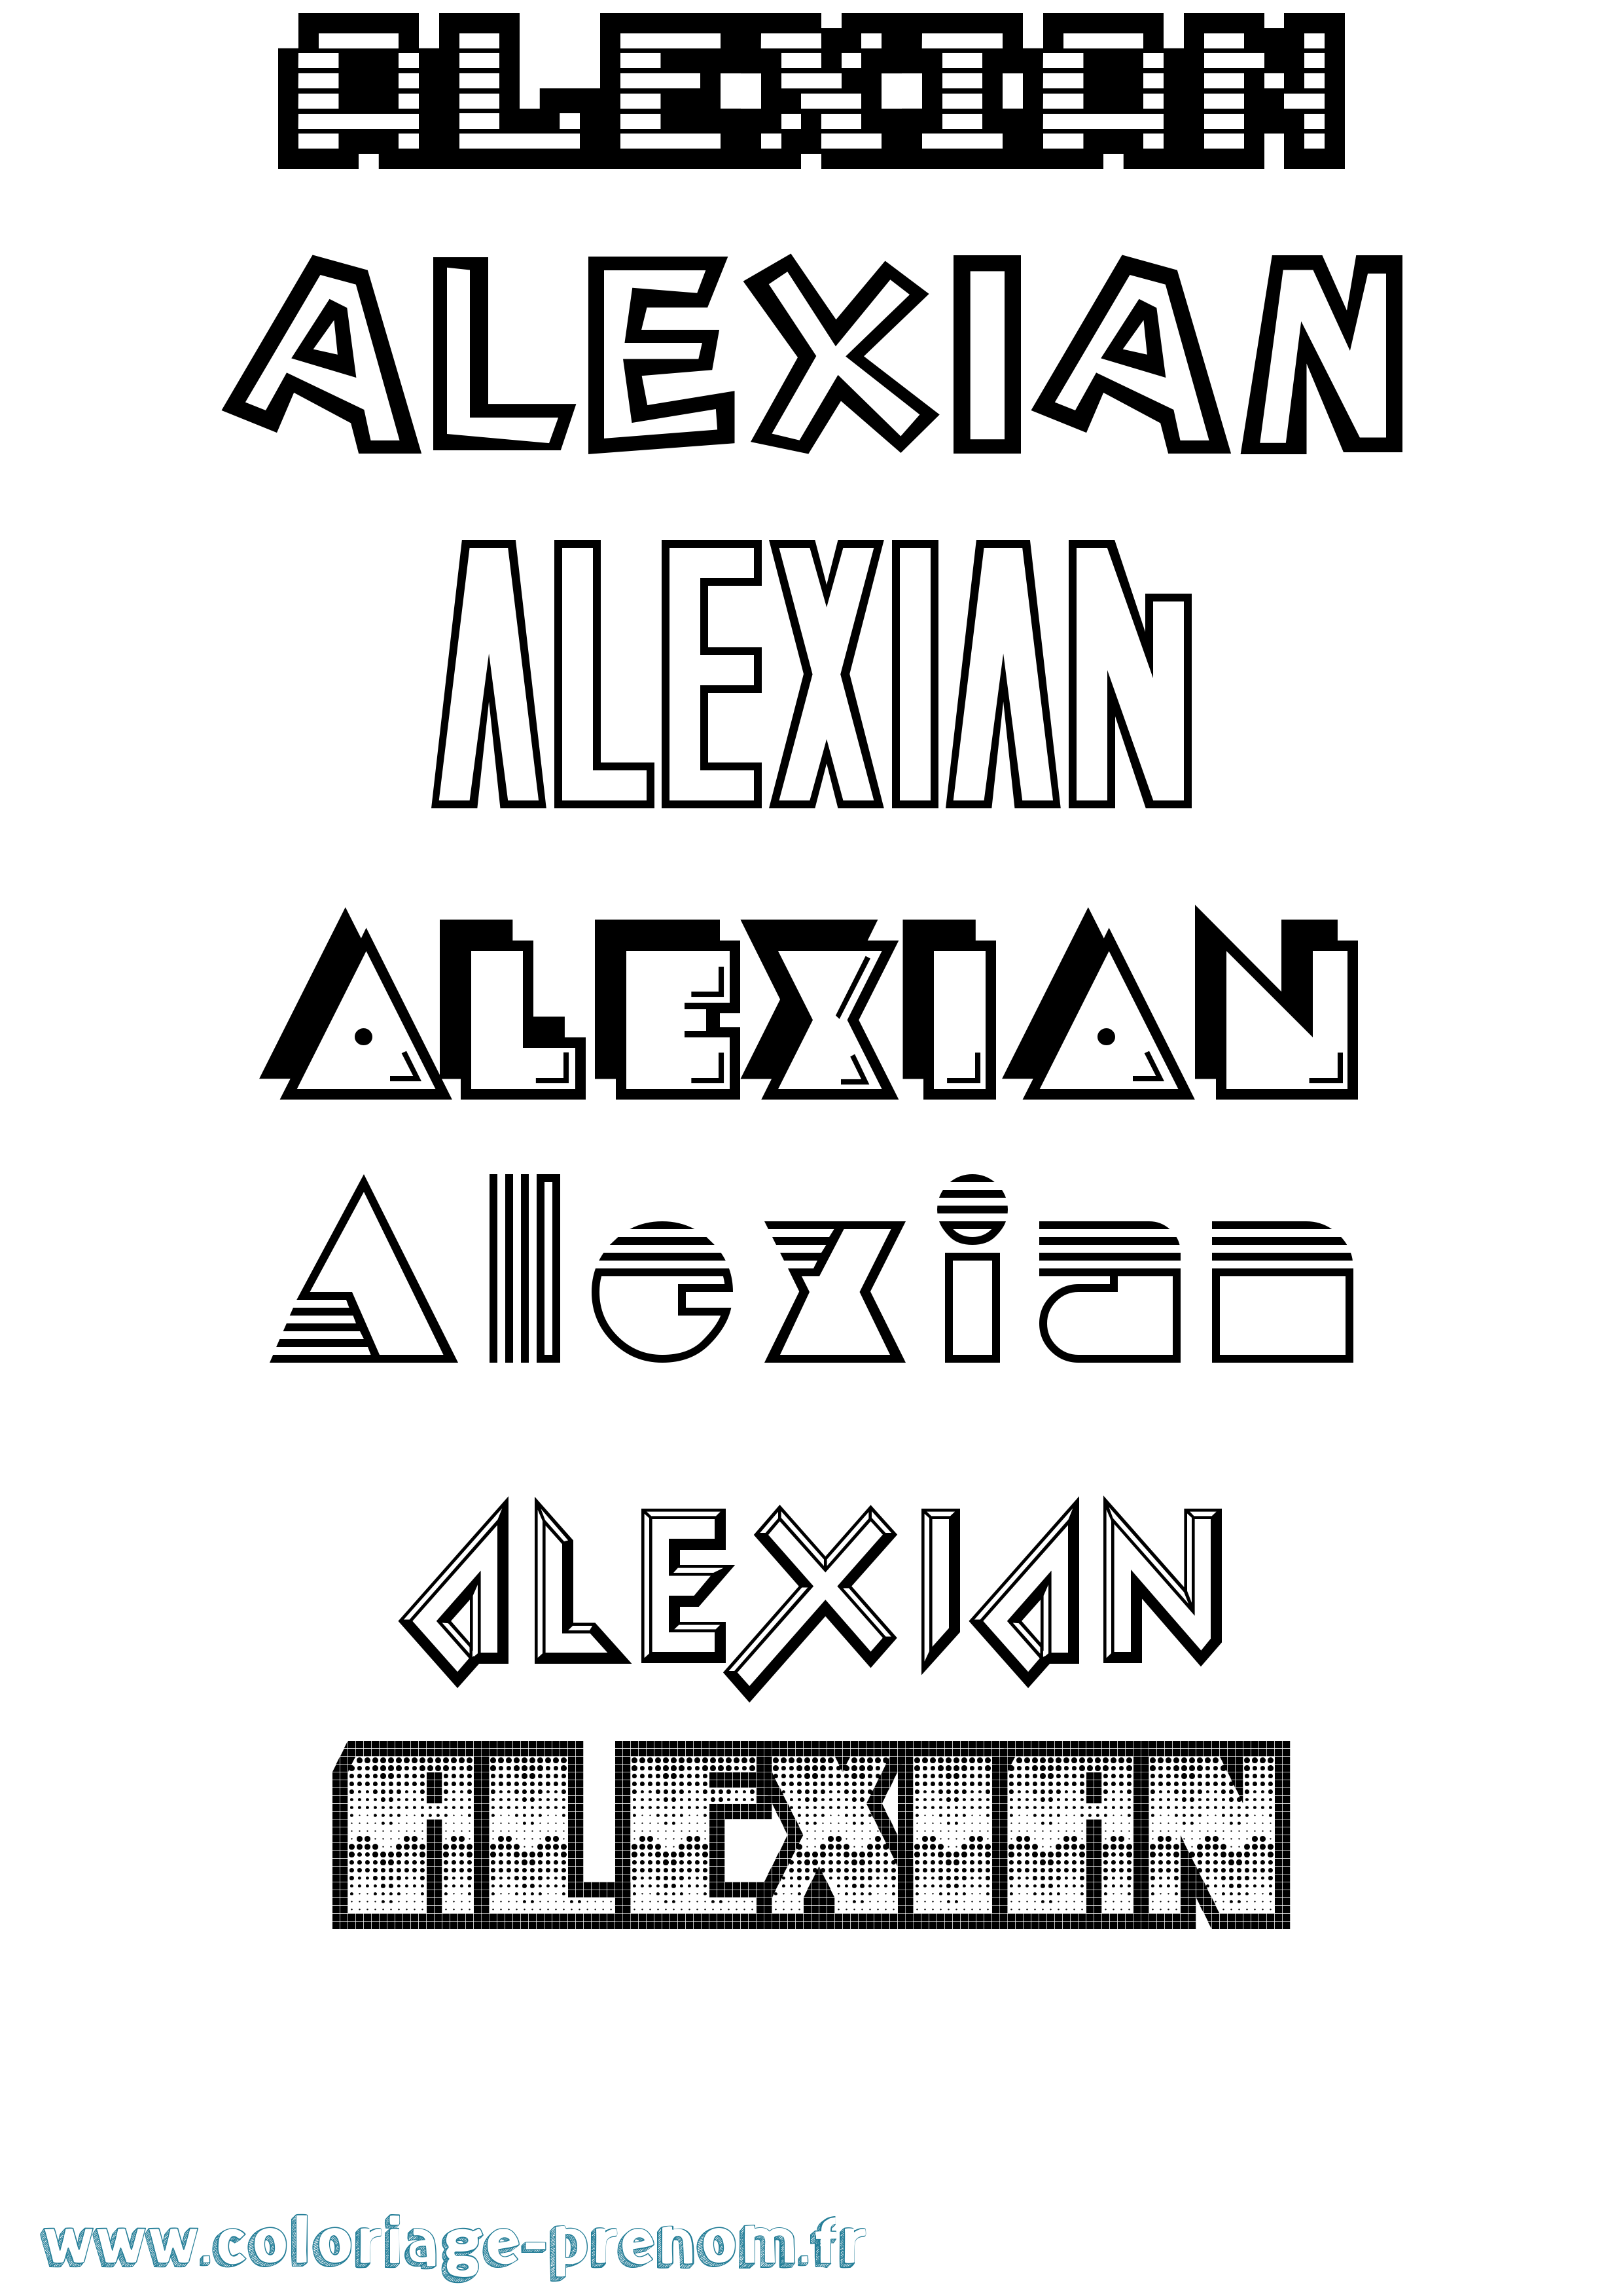 Coloriage prénom Alexian Jeux Vidéos